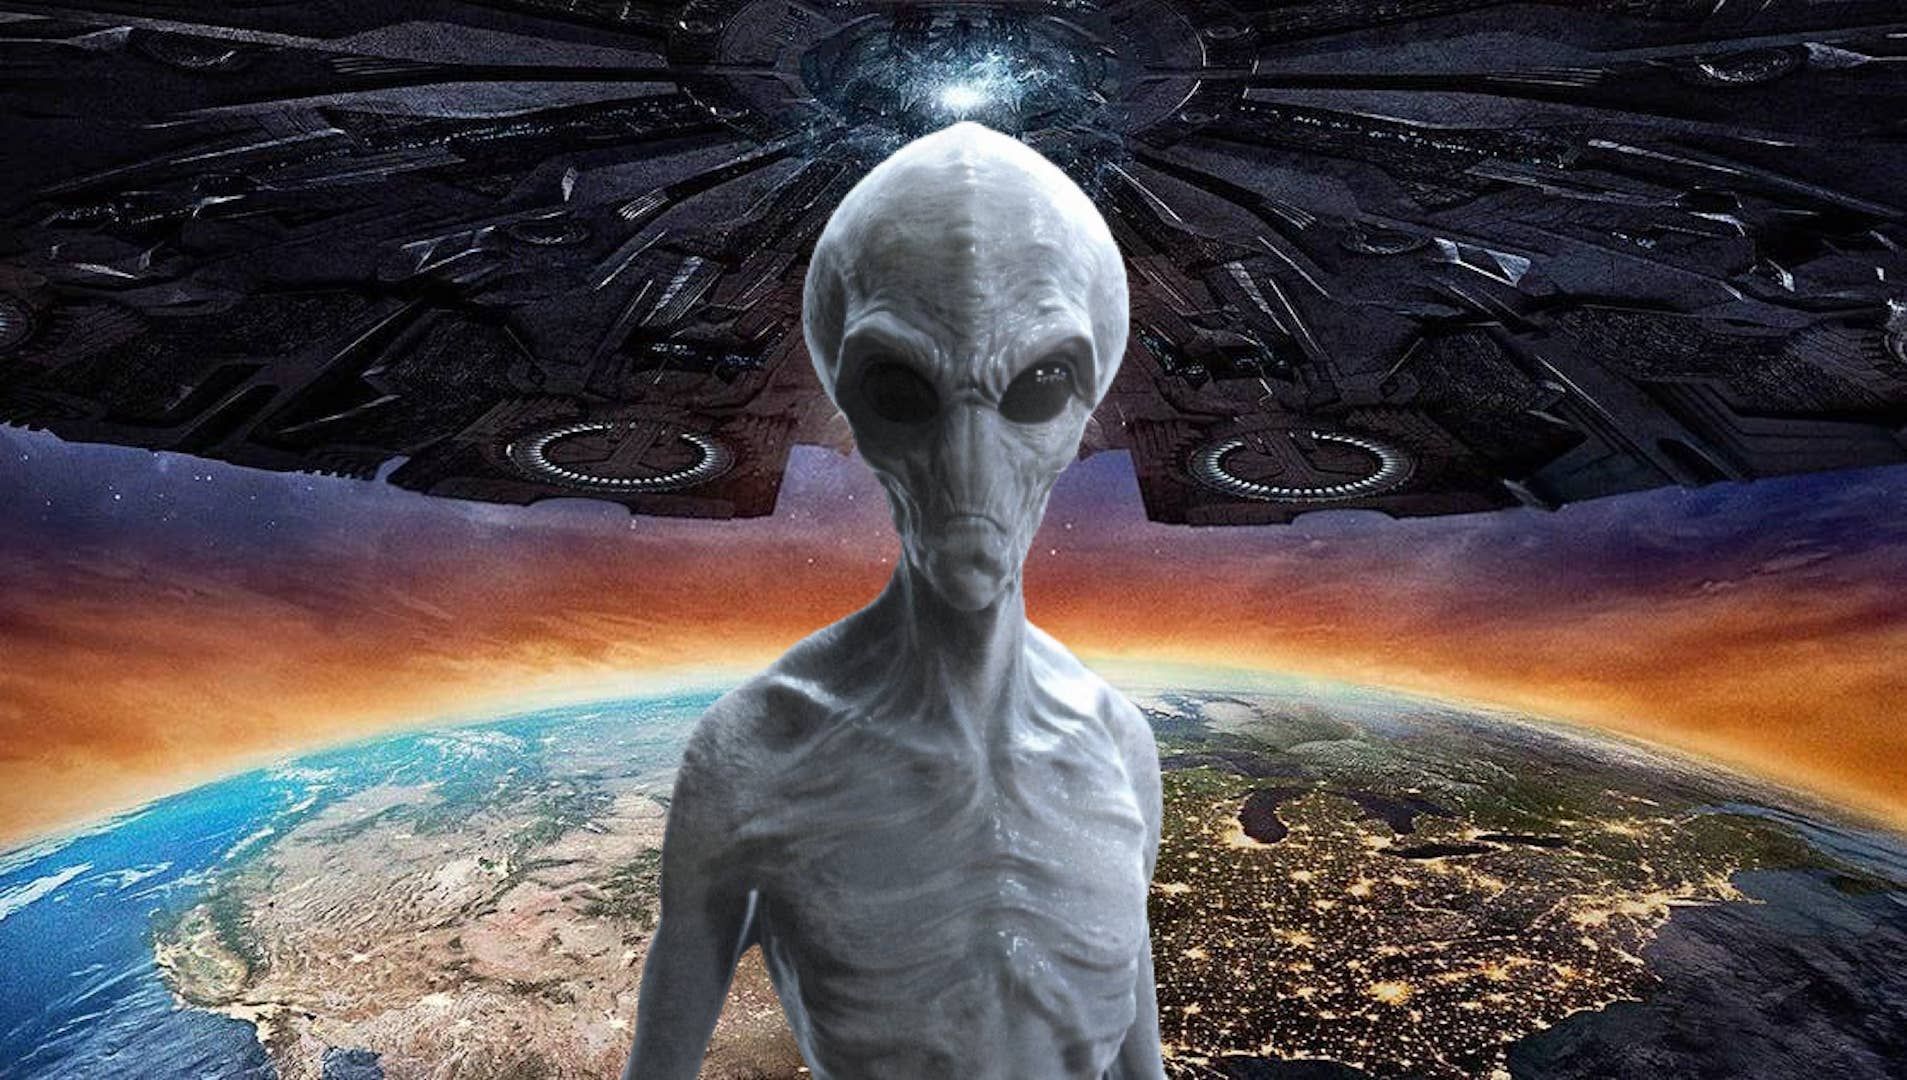 Un experto detalla qué pasaría si una civilización alienígena invade la Tierra - Vandal Random